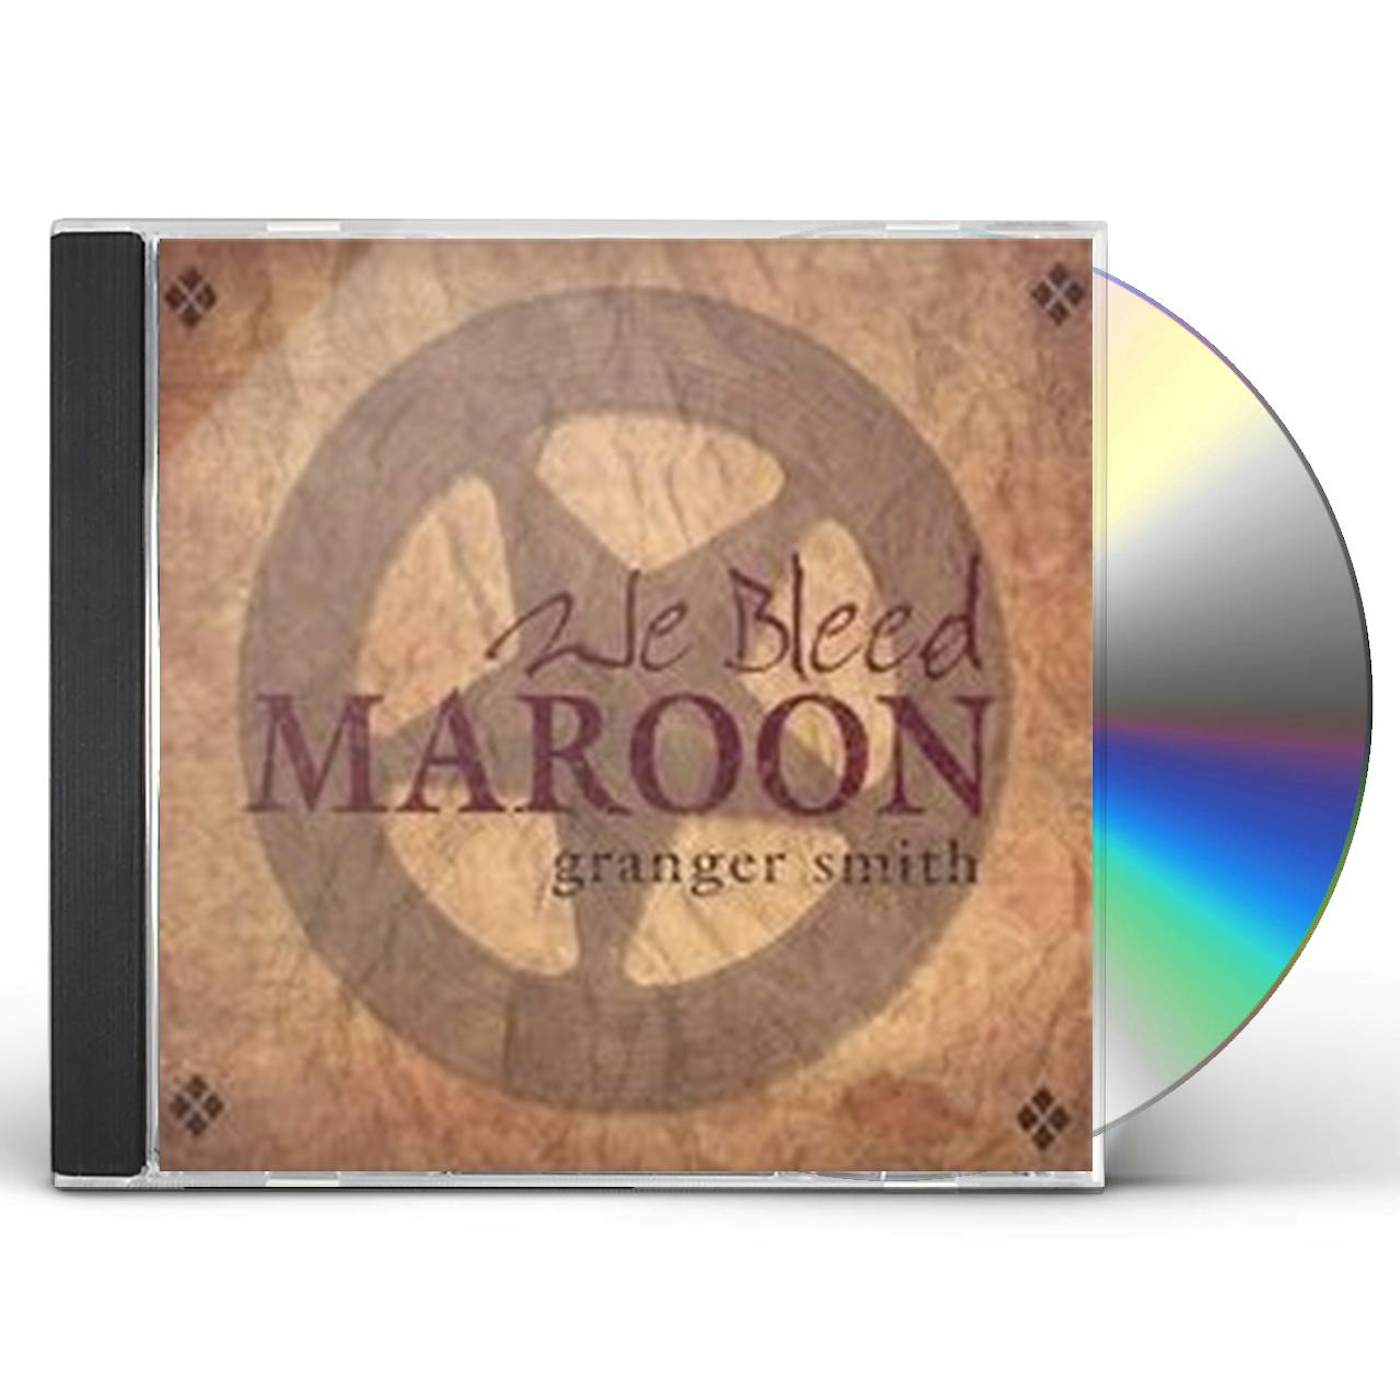 Granger Smith WE BLEED MAROON CD